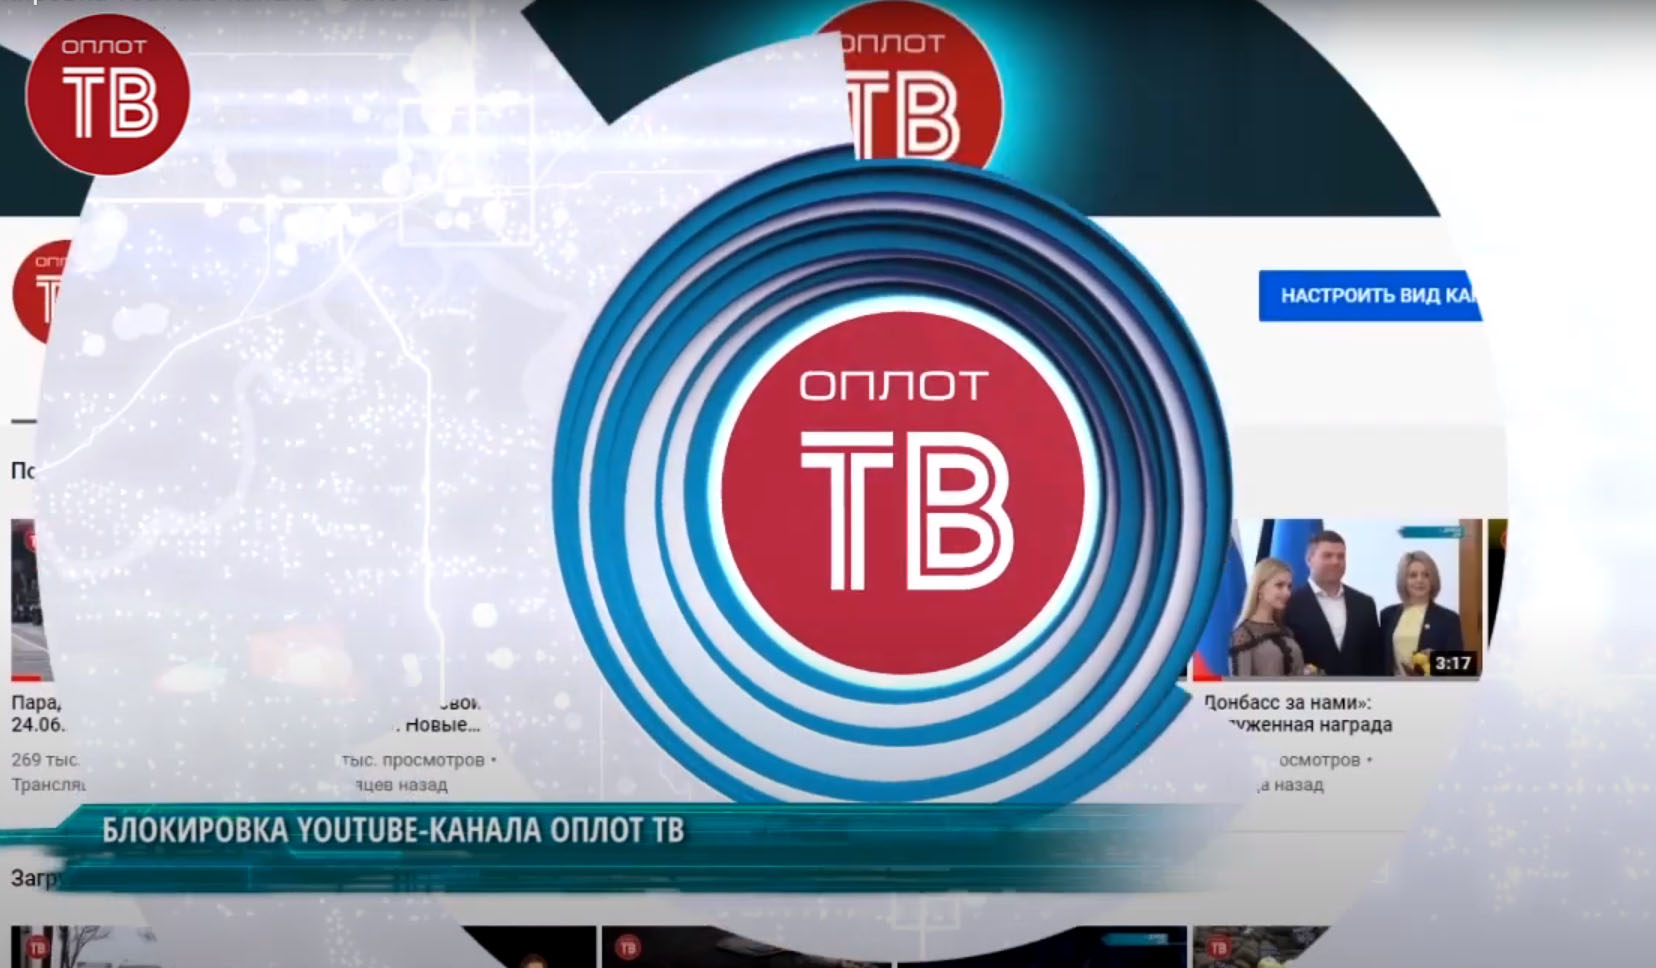 Программа на оплот 2. Телеканал Оплот. Оплот ТВ логотип. Логотип канала Оплот ТВ (ДНР).